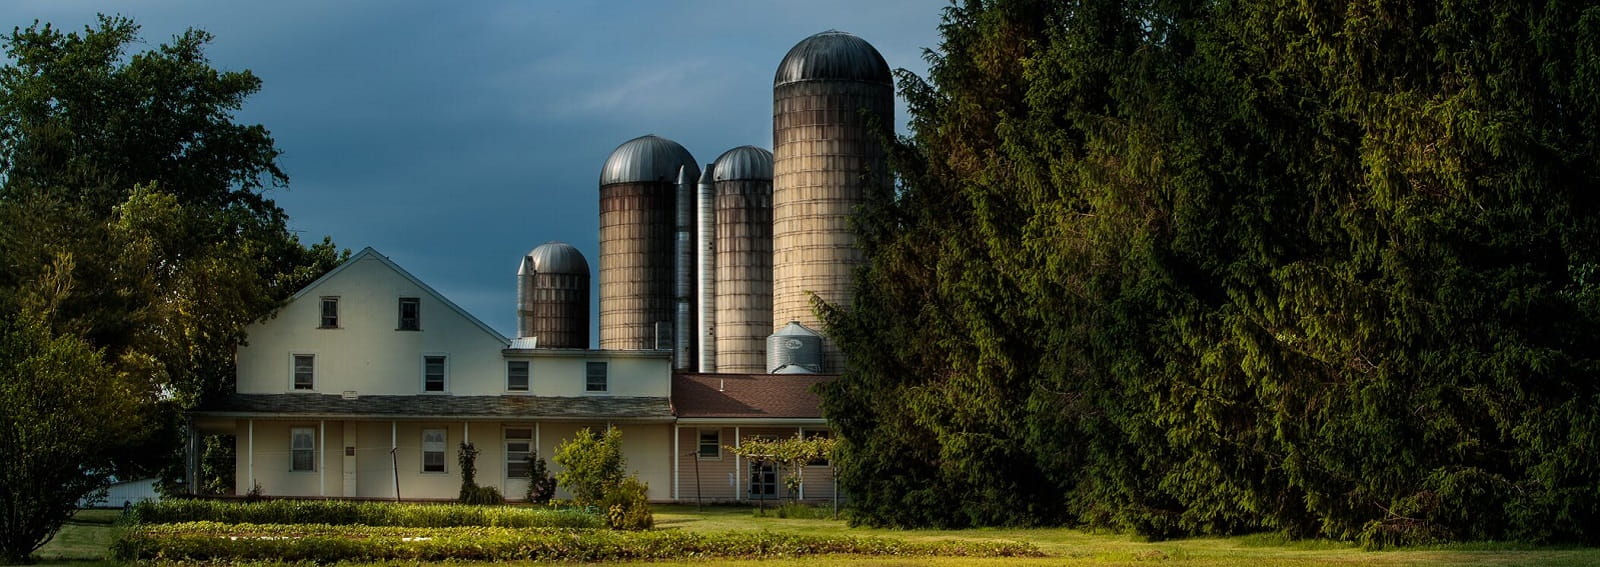 A Pennsylvania farmhouse